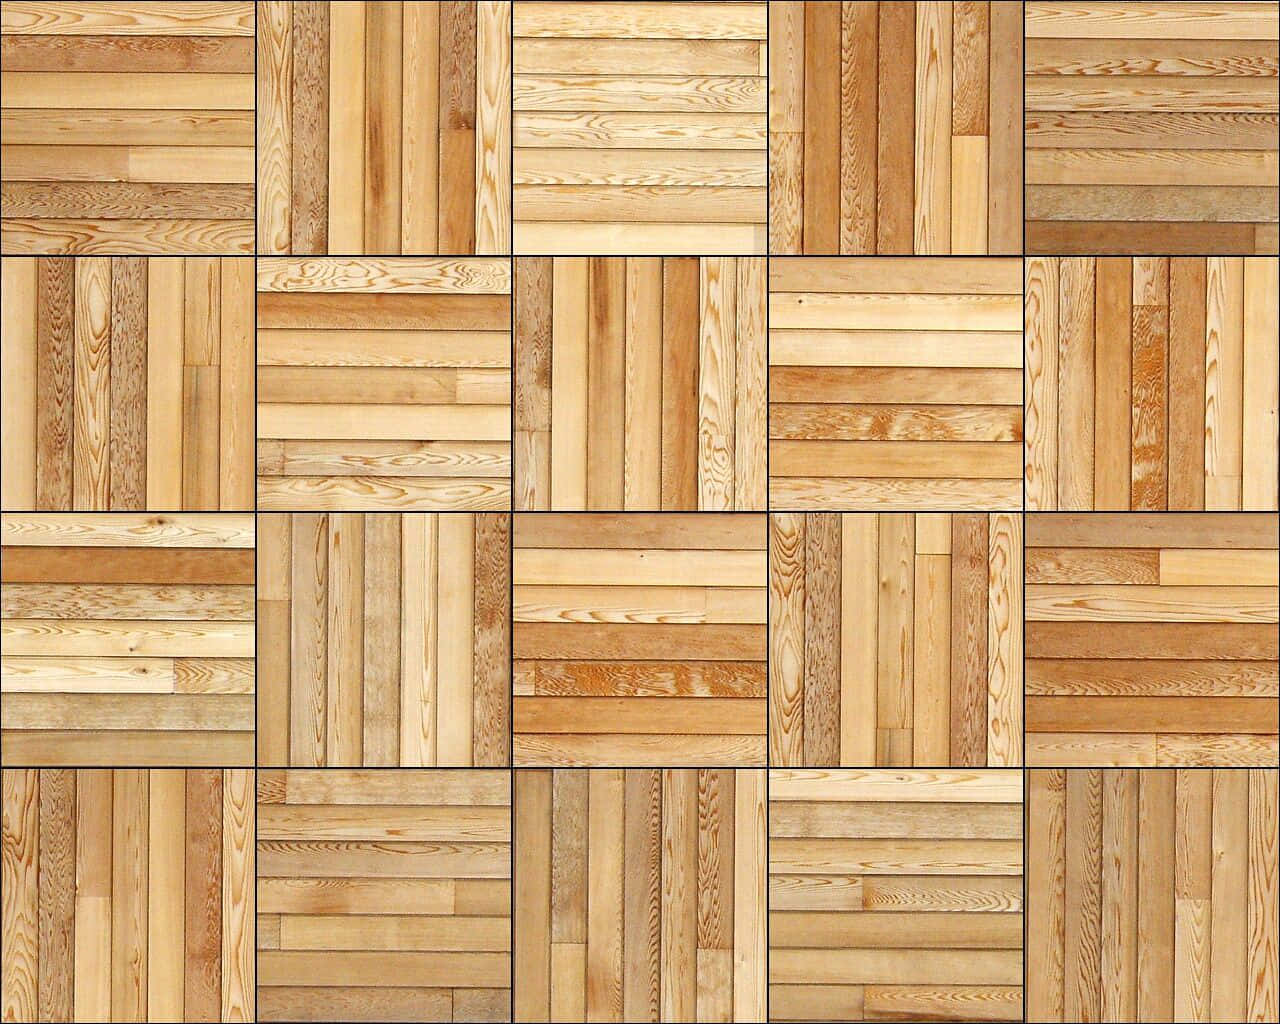 Aesthetic Wooden Floor in Natural Light